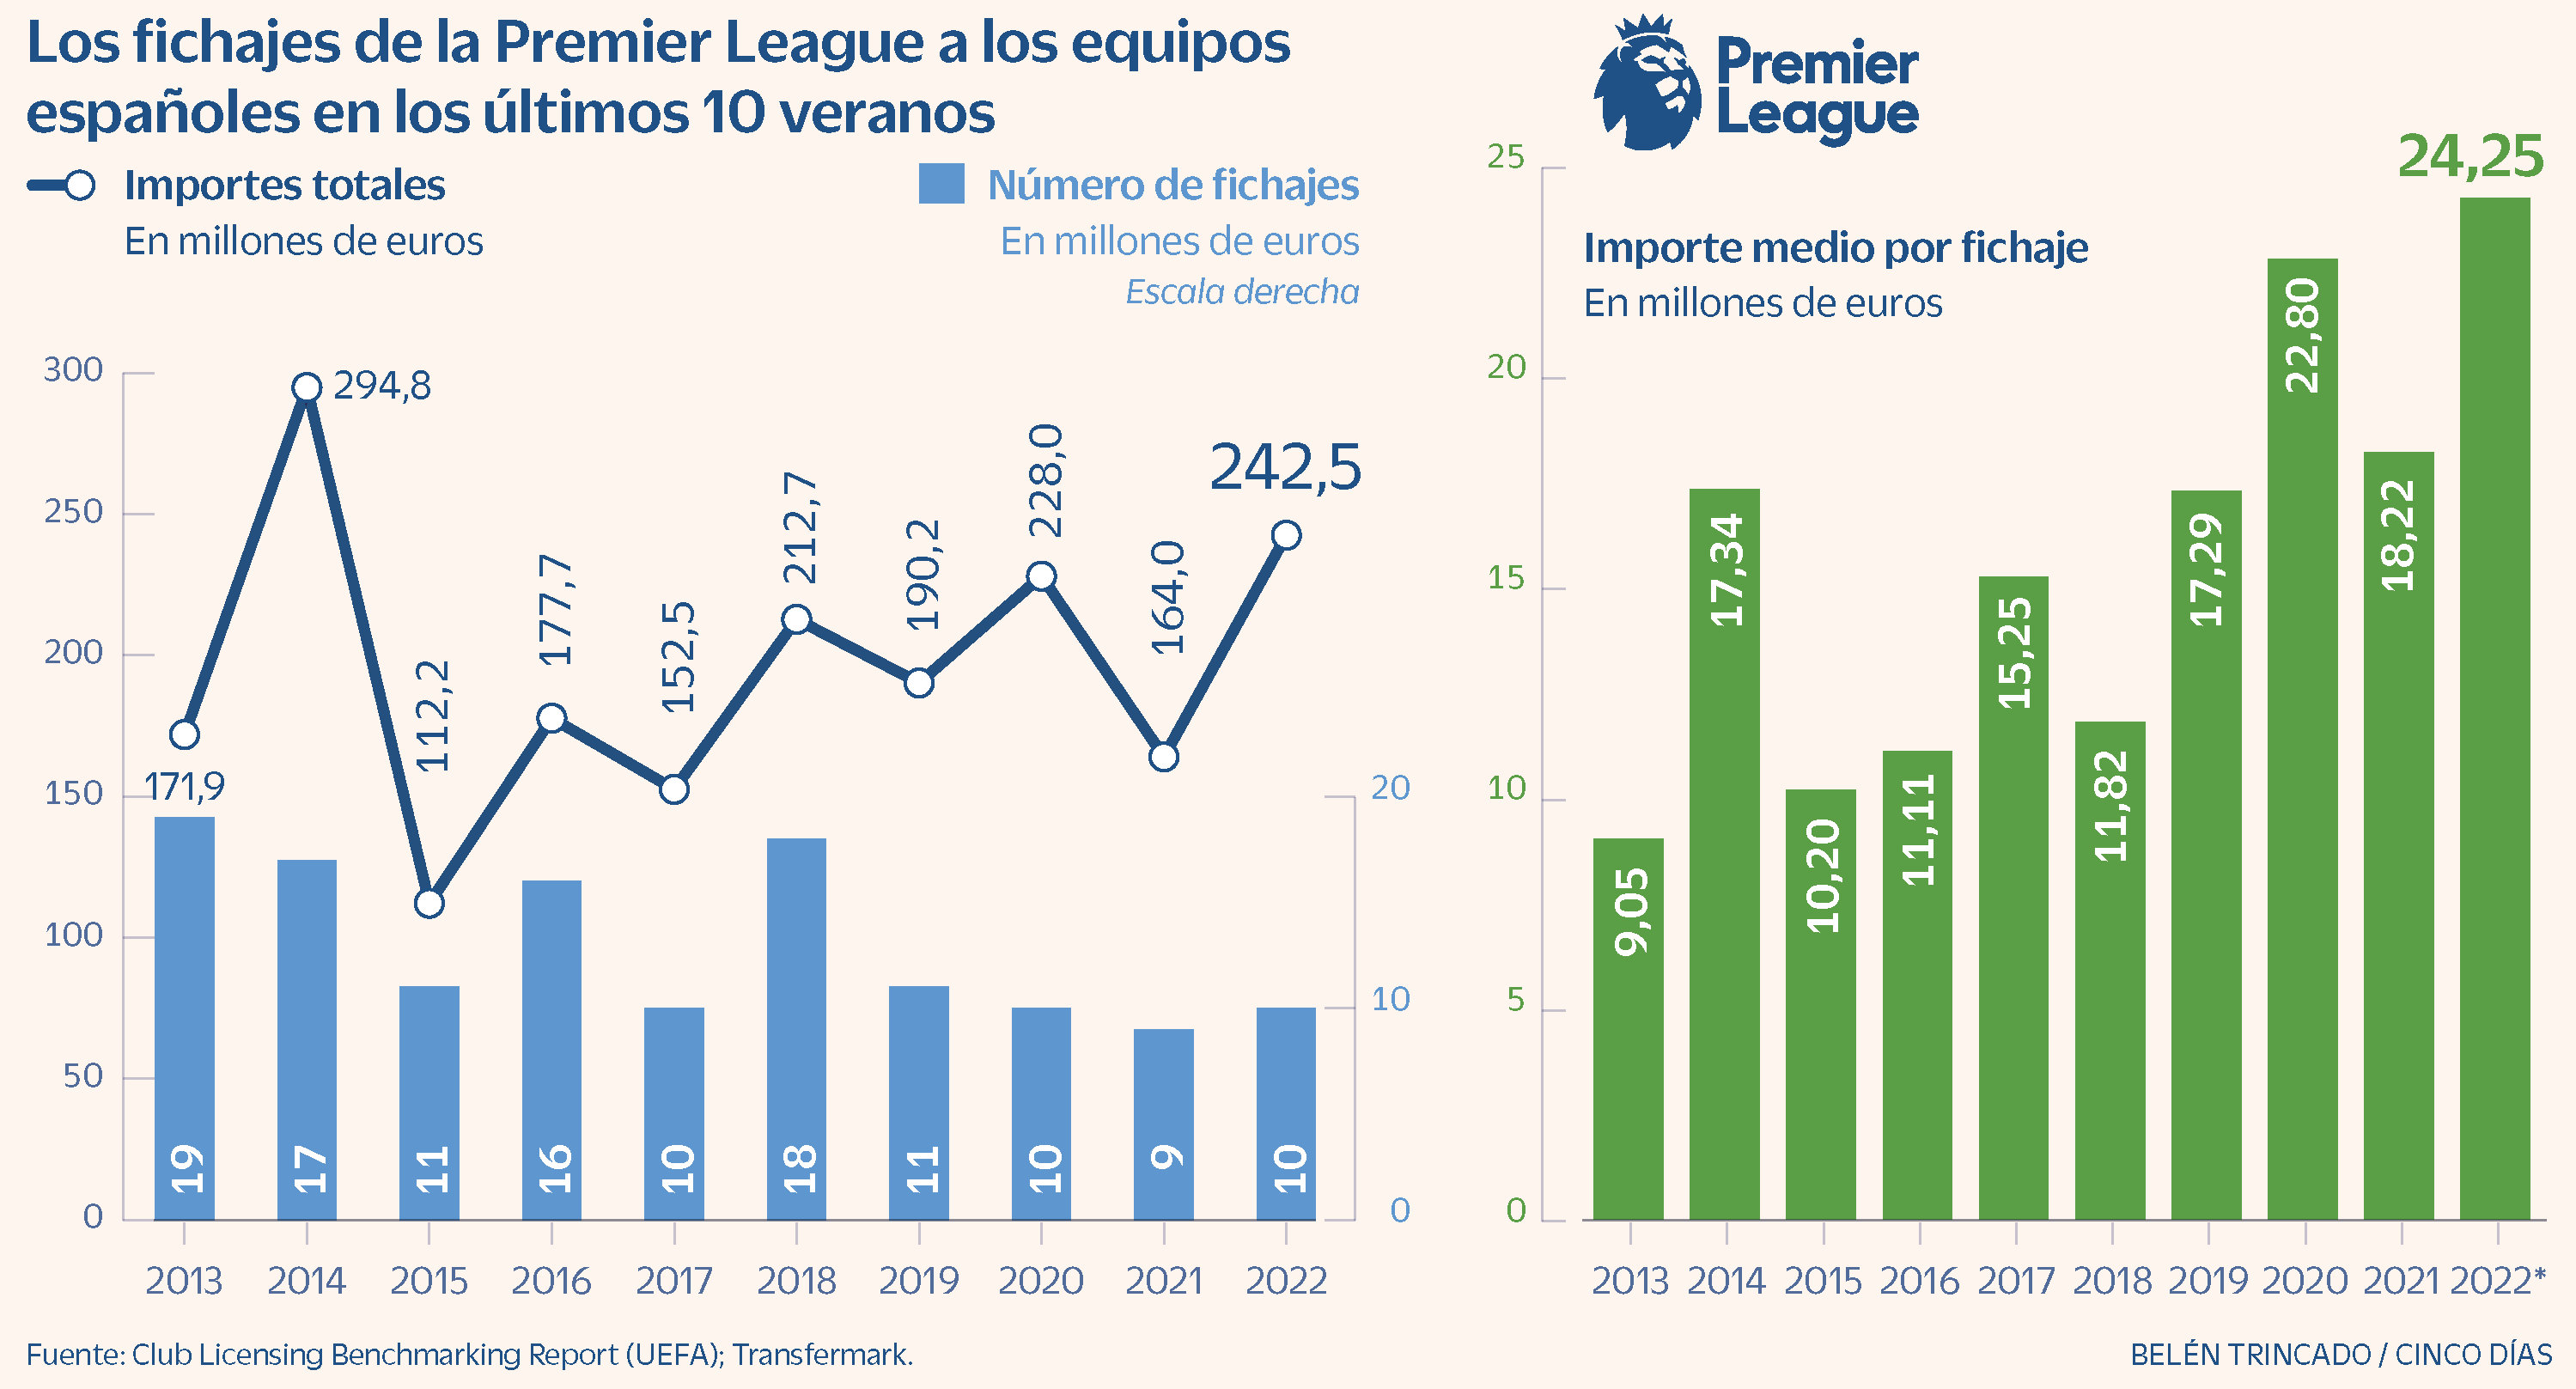 Premier League 200 millones en compras cada verano al español | Compañías | Días